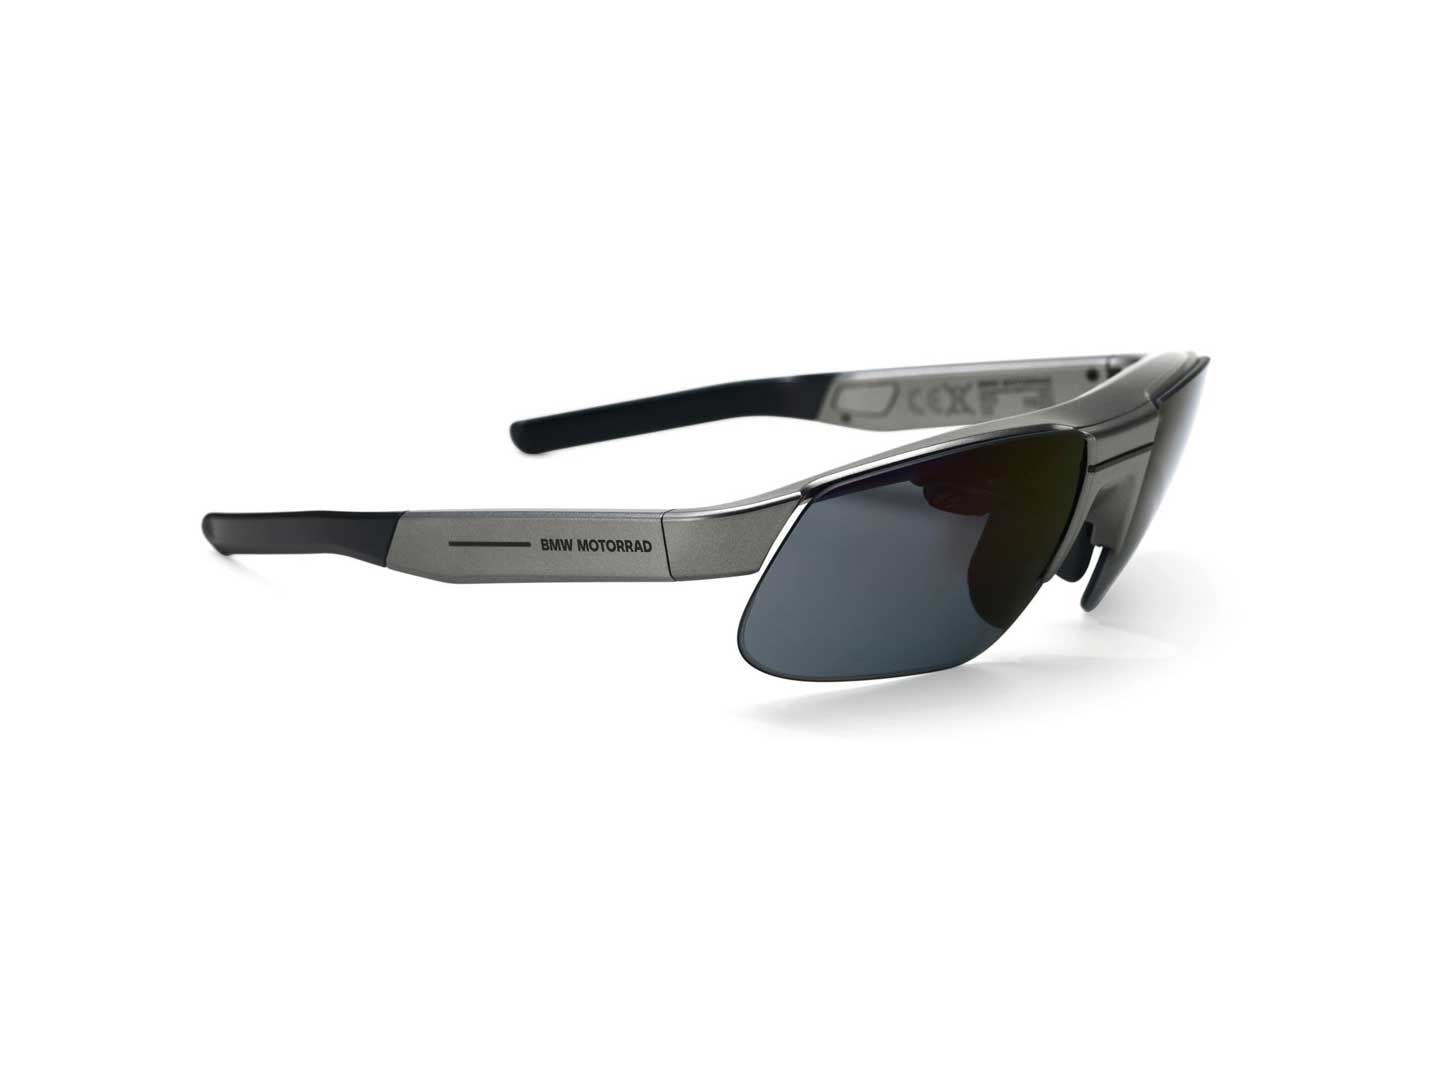 BMW a également lancé ces nouvelles lunettes intelligentes ConnectedRide, qui offrent aux conducteurs une technologie d'affichage tête haute.